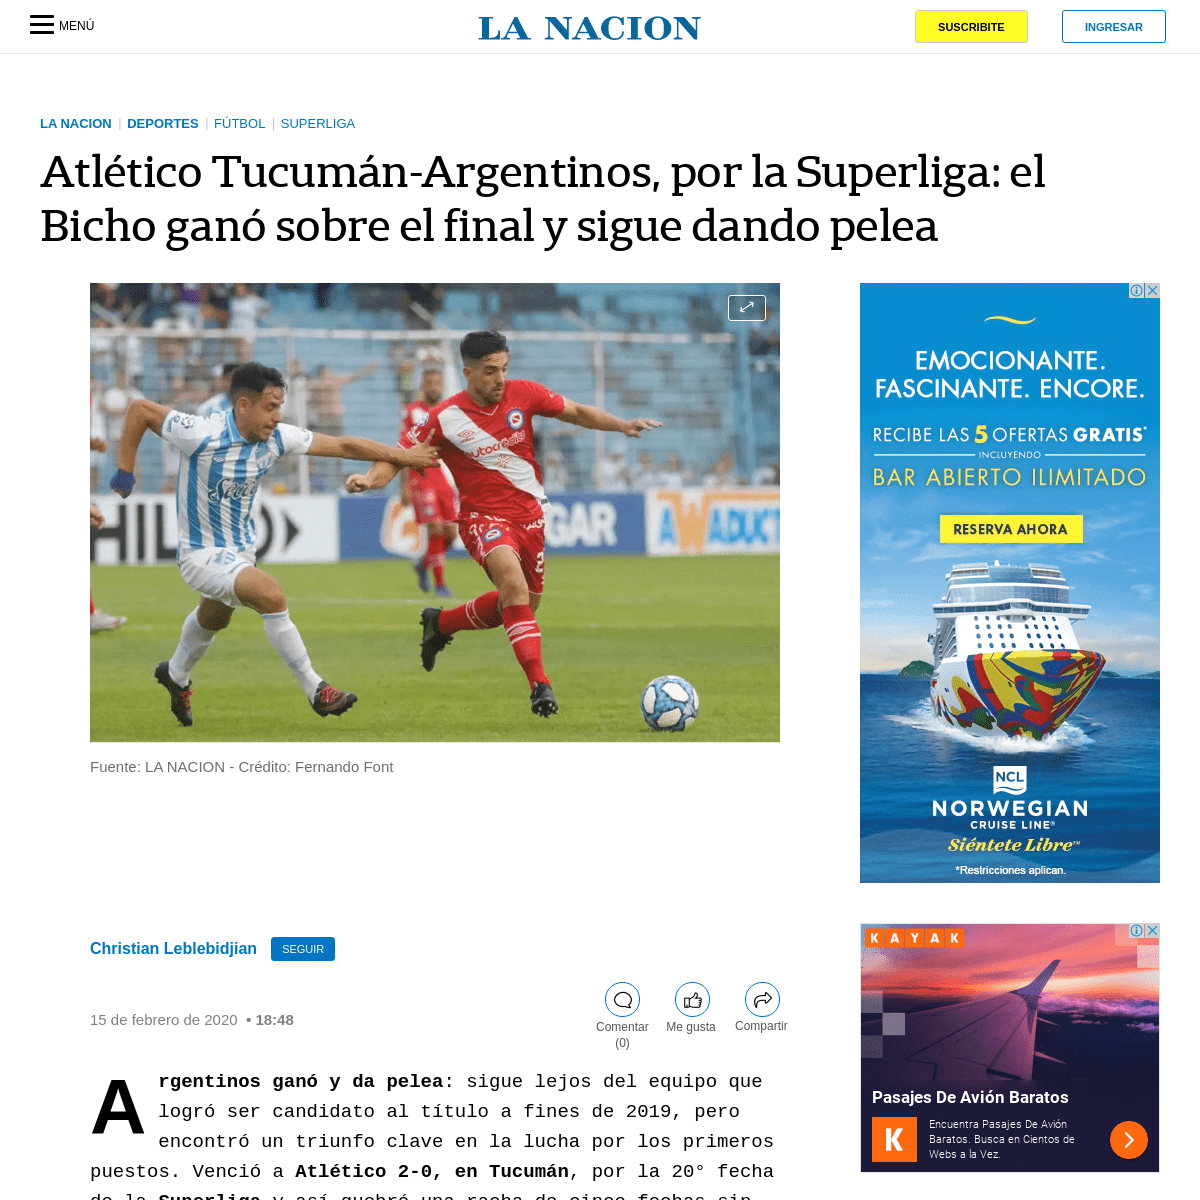 AtlÃ©tico TucumÃ¡n-Argentinos, por la Superliga- el Bicho ganÃ³ sobre el final y sigue dando pelea - LA NACION